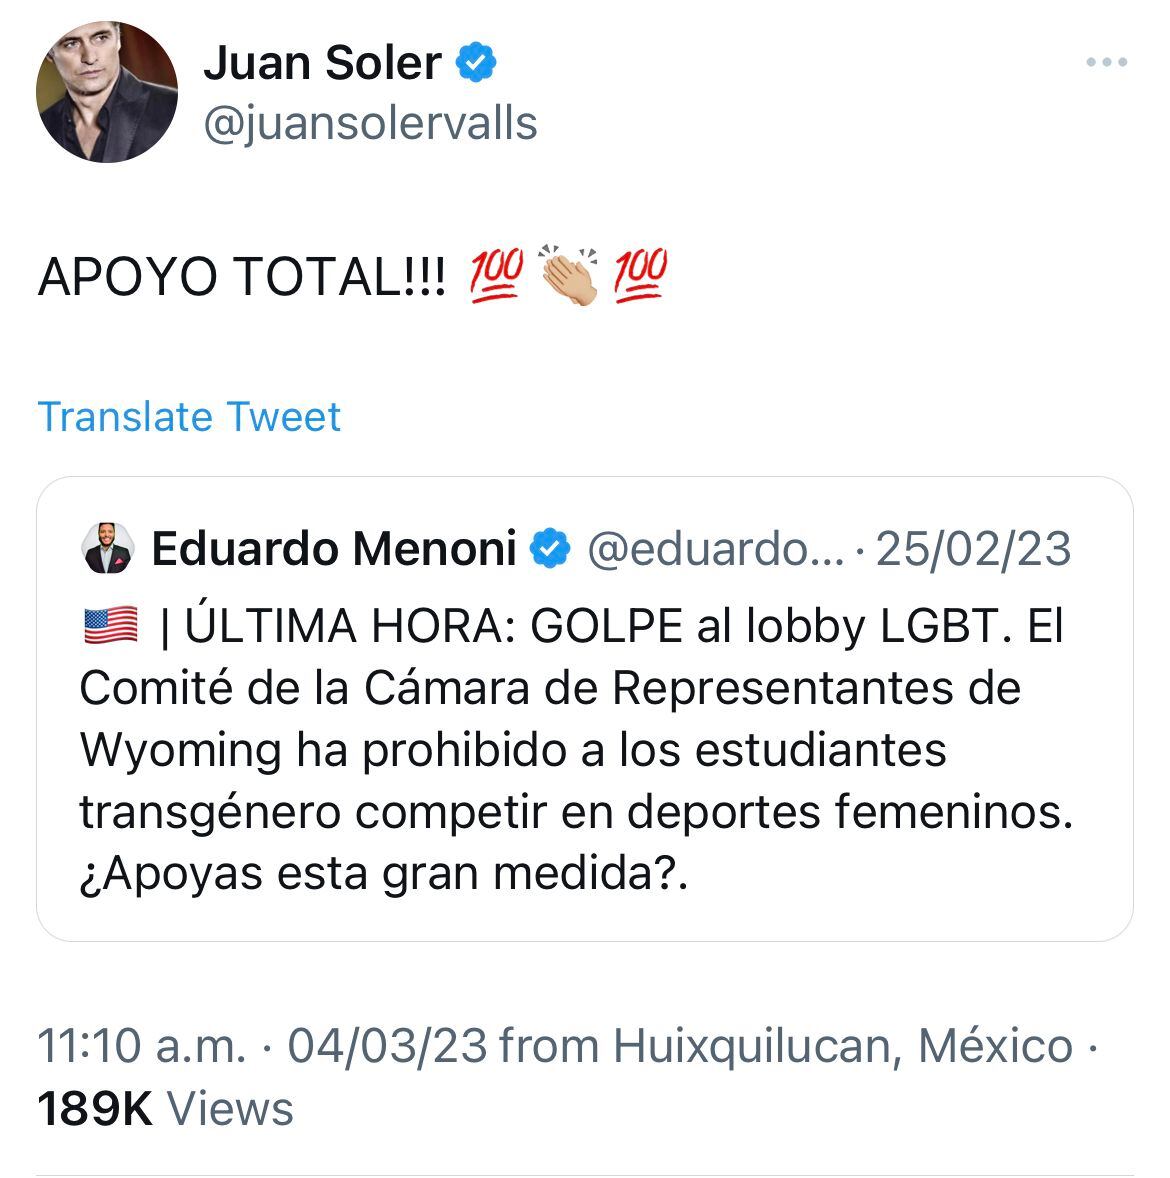 Juan Soler afirma apoyo total a leyes anti-trans Foto: Screenshot Twitter @juansolervalls